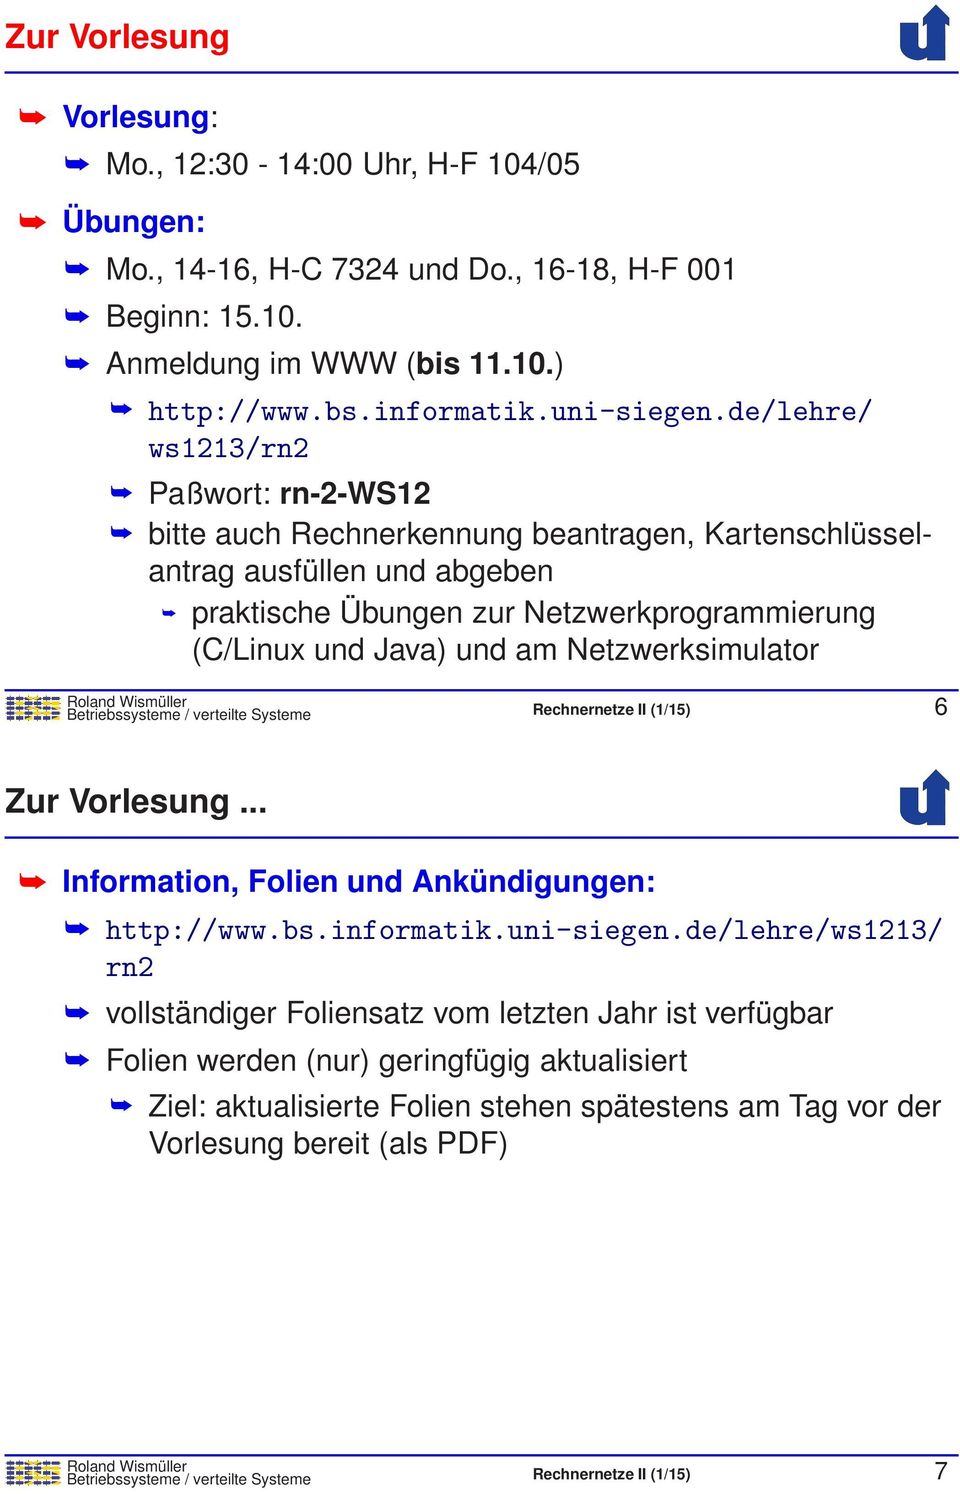 Netzwerksimulator Betriebssysteme / verteilte Systeme Rechnernetze II (1/15) 6 Zur Vorlesung... Information, Folien und Ankündigungen: http://www.bs.informatik.uni-siegen.